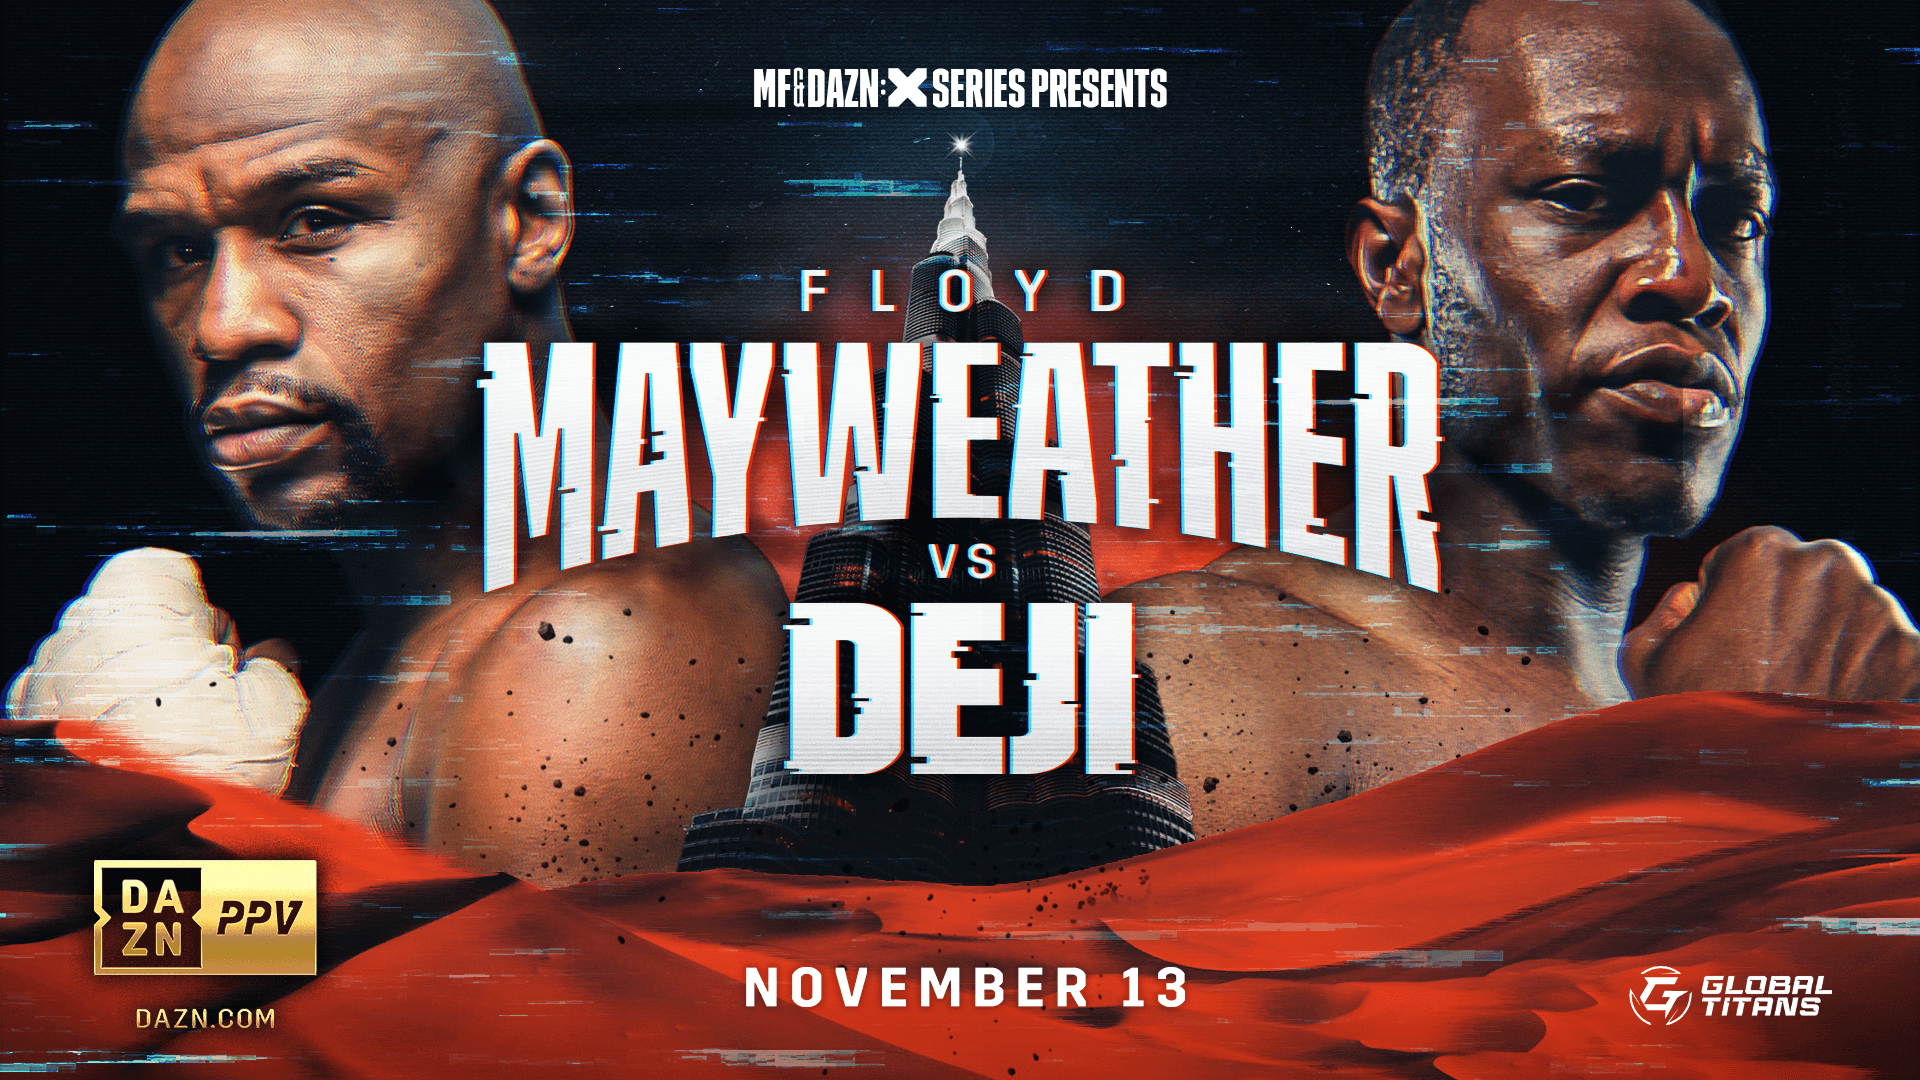 Deji vs Floyd Mayweather Live Stream How to watch